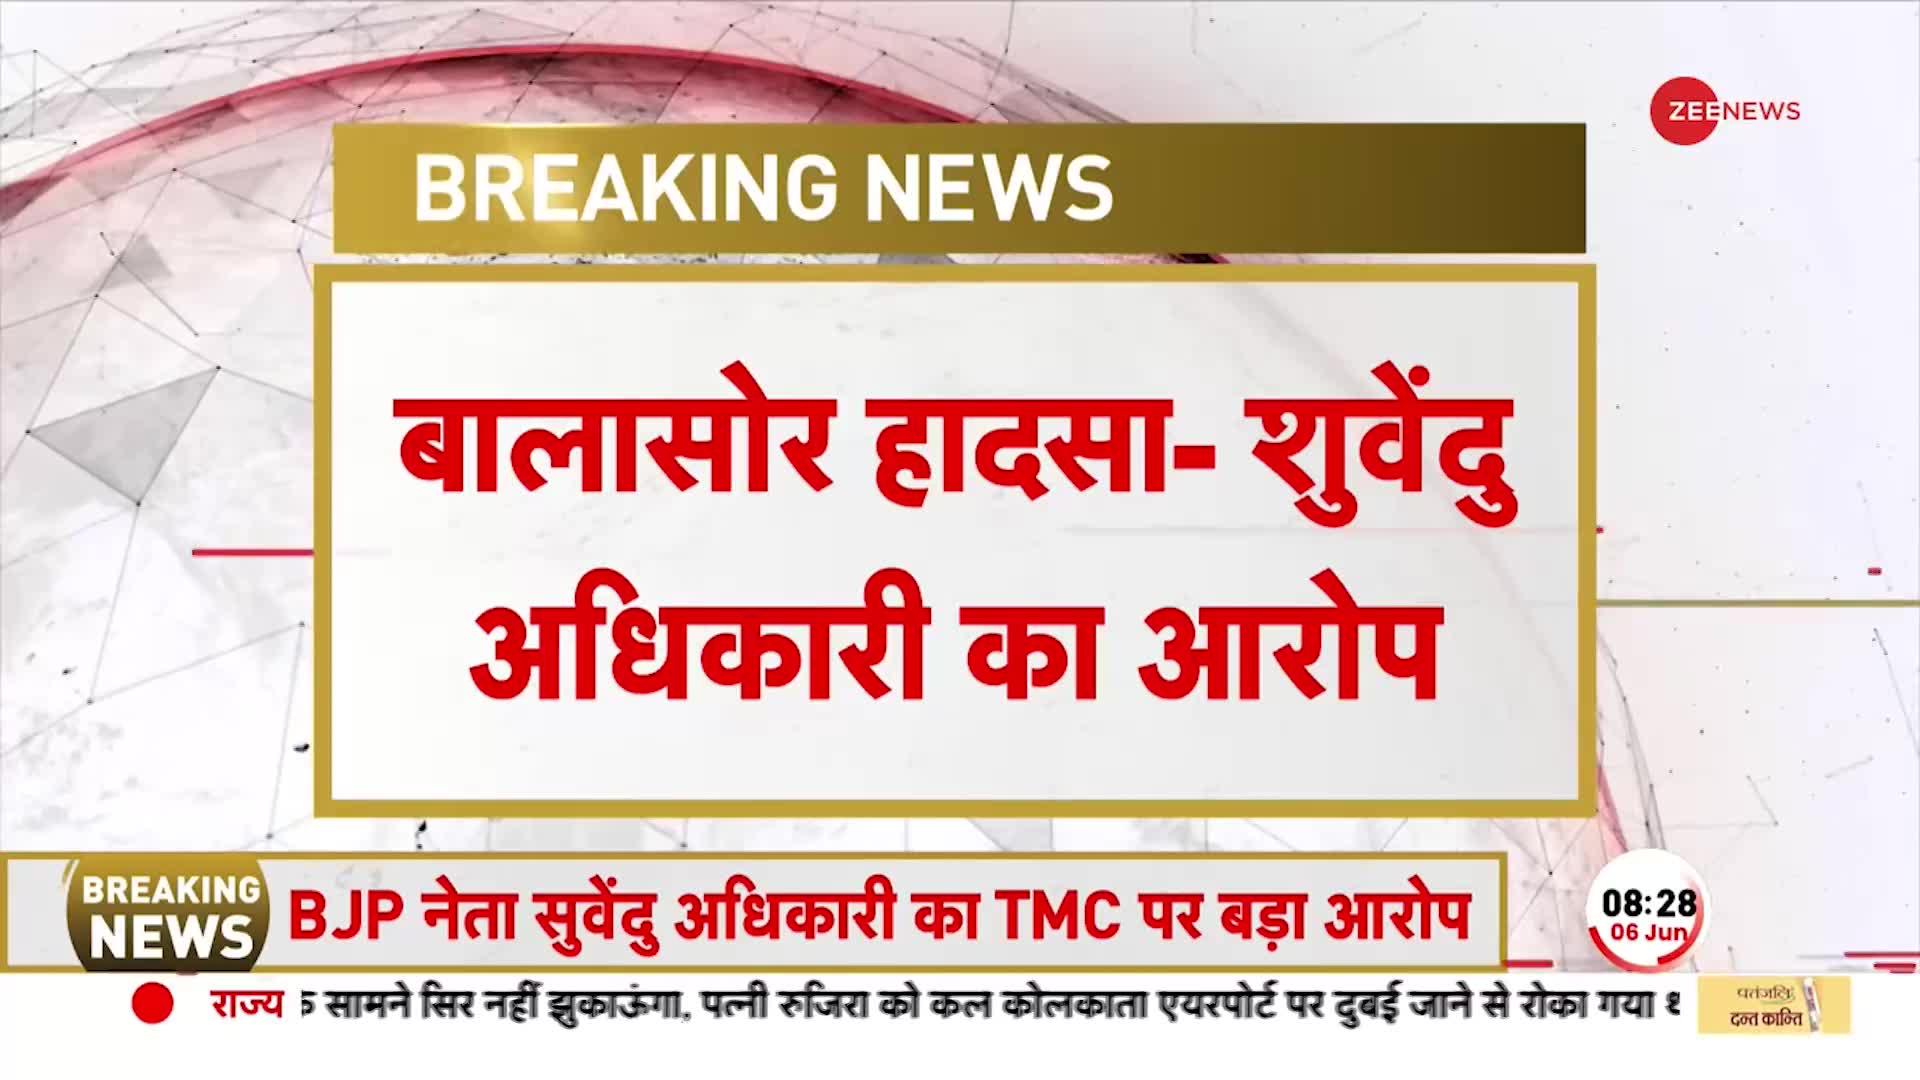 रेल दुर्घटना पर Suvendu Adhikari का गंभीर आरोप, 'बालासोर हादसा TMC की साज़िश'